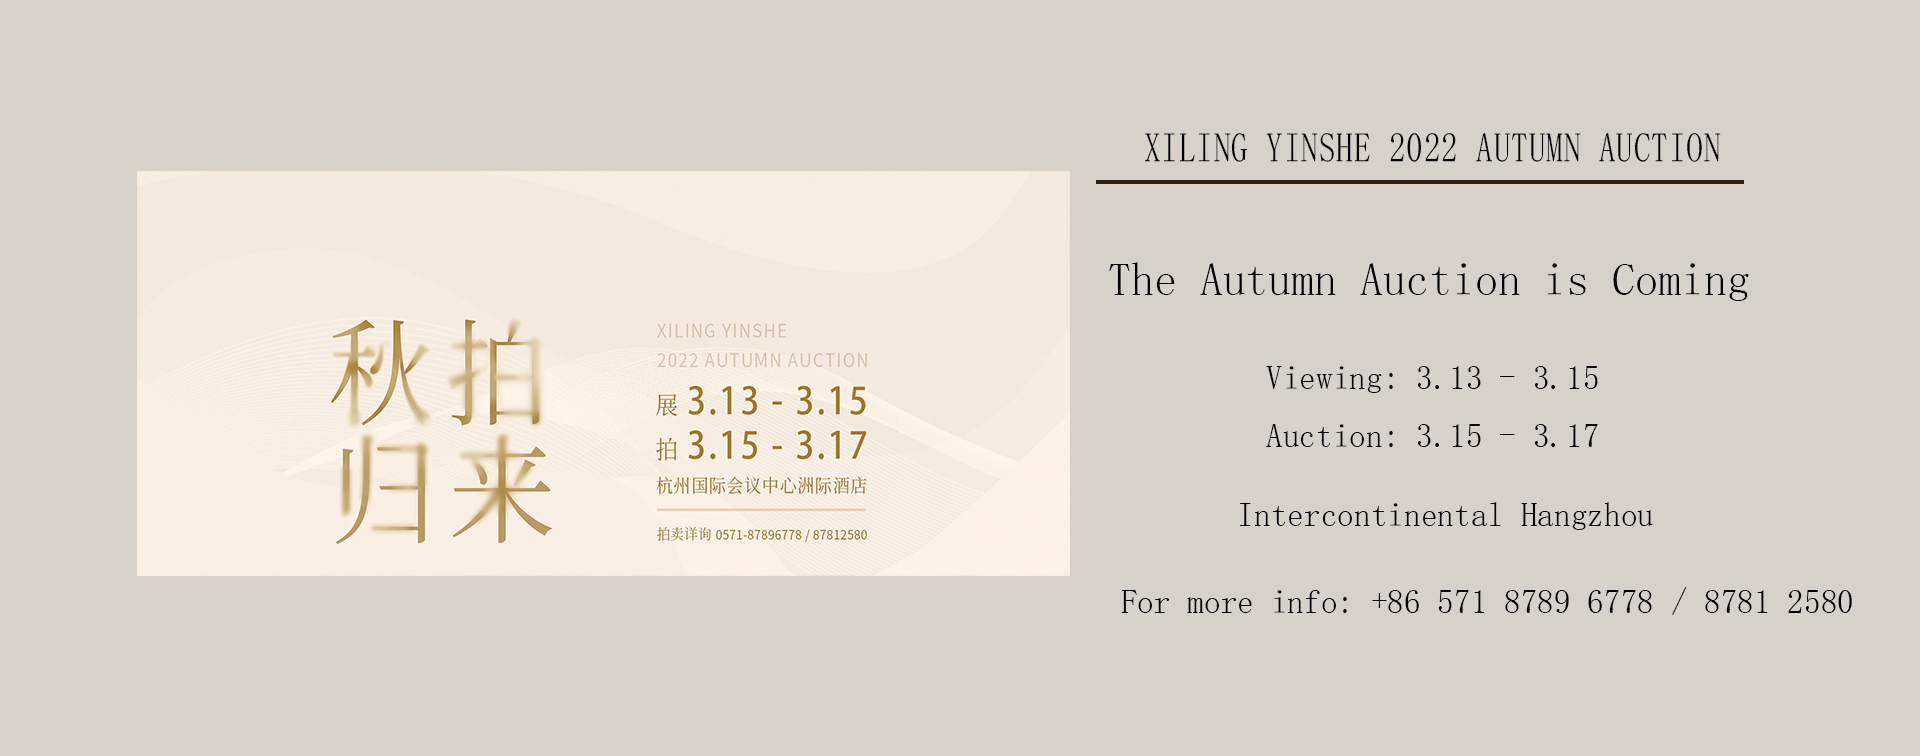 Xiling Yinshe 2022 Autumn Auction